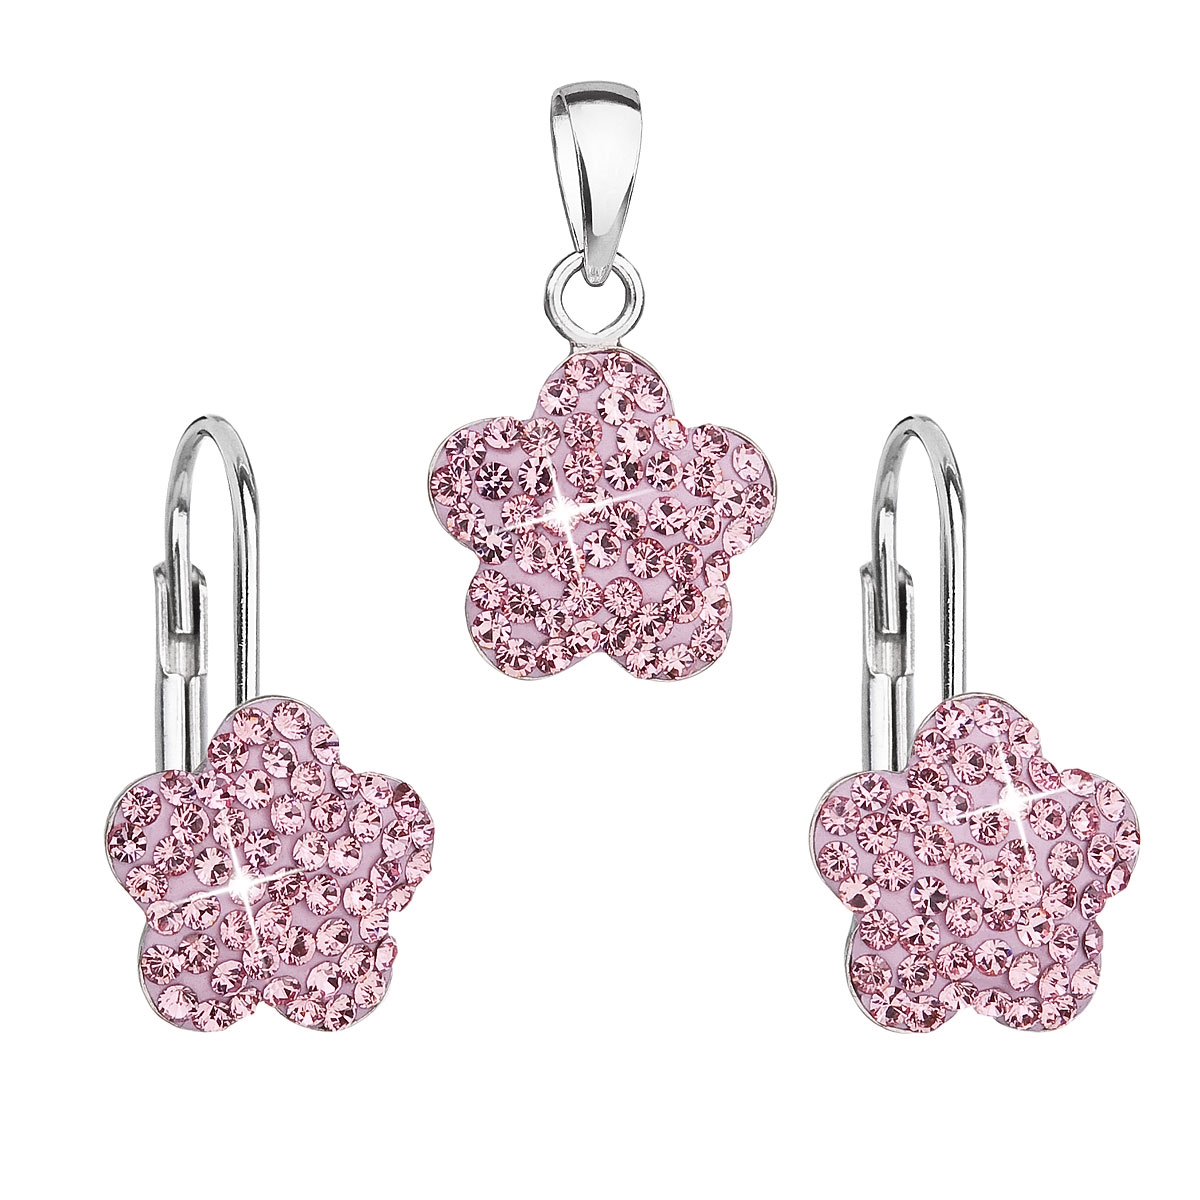 Súprava strieborných šperkov - kvetinky s kryštálmi Crystals from Swarovski ® Rose